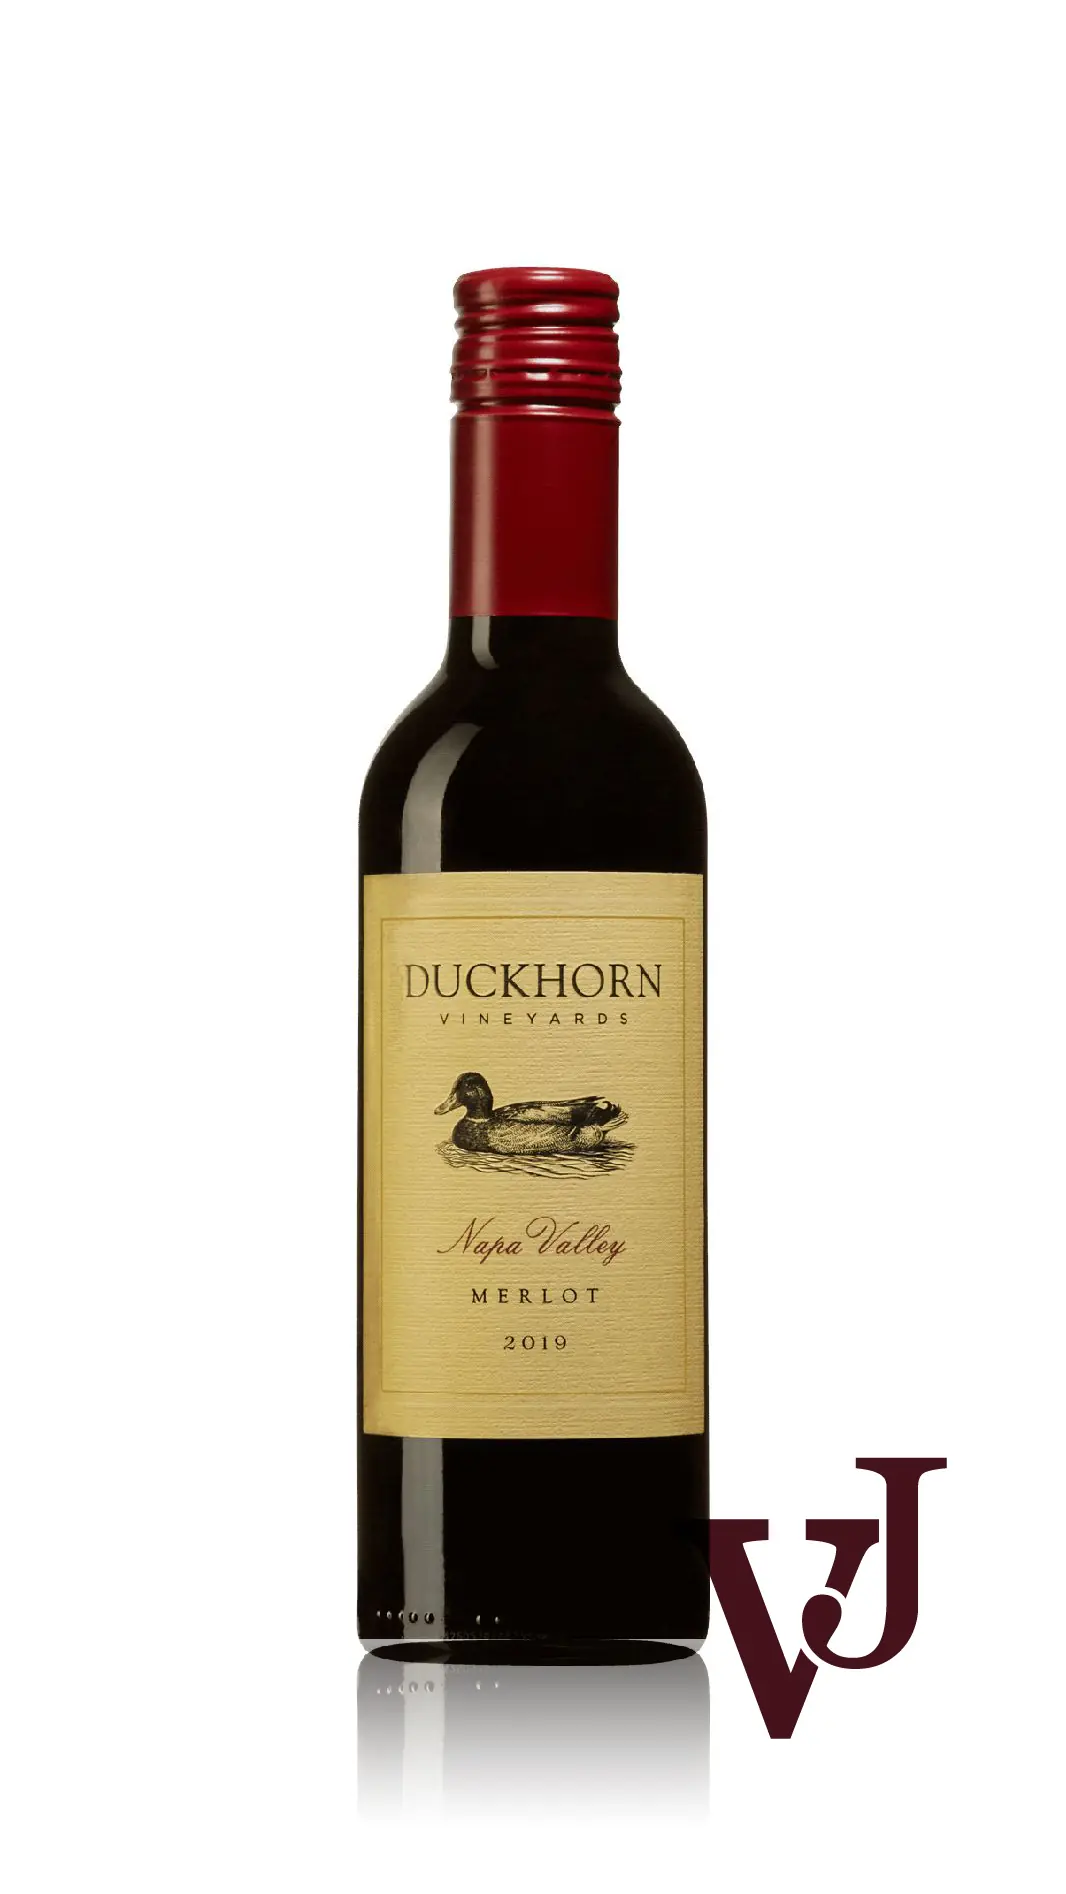 Rött Vin - Duckhorn Vineyards Napa Valley Merlot 2019 artikel nummer 9267102 från producenten Duckhorn Vineyards från området USA - Vinjournalen.se